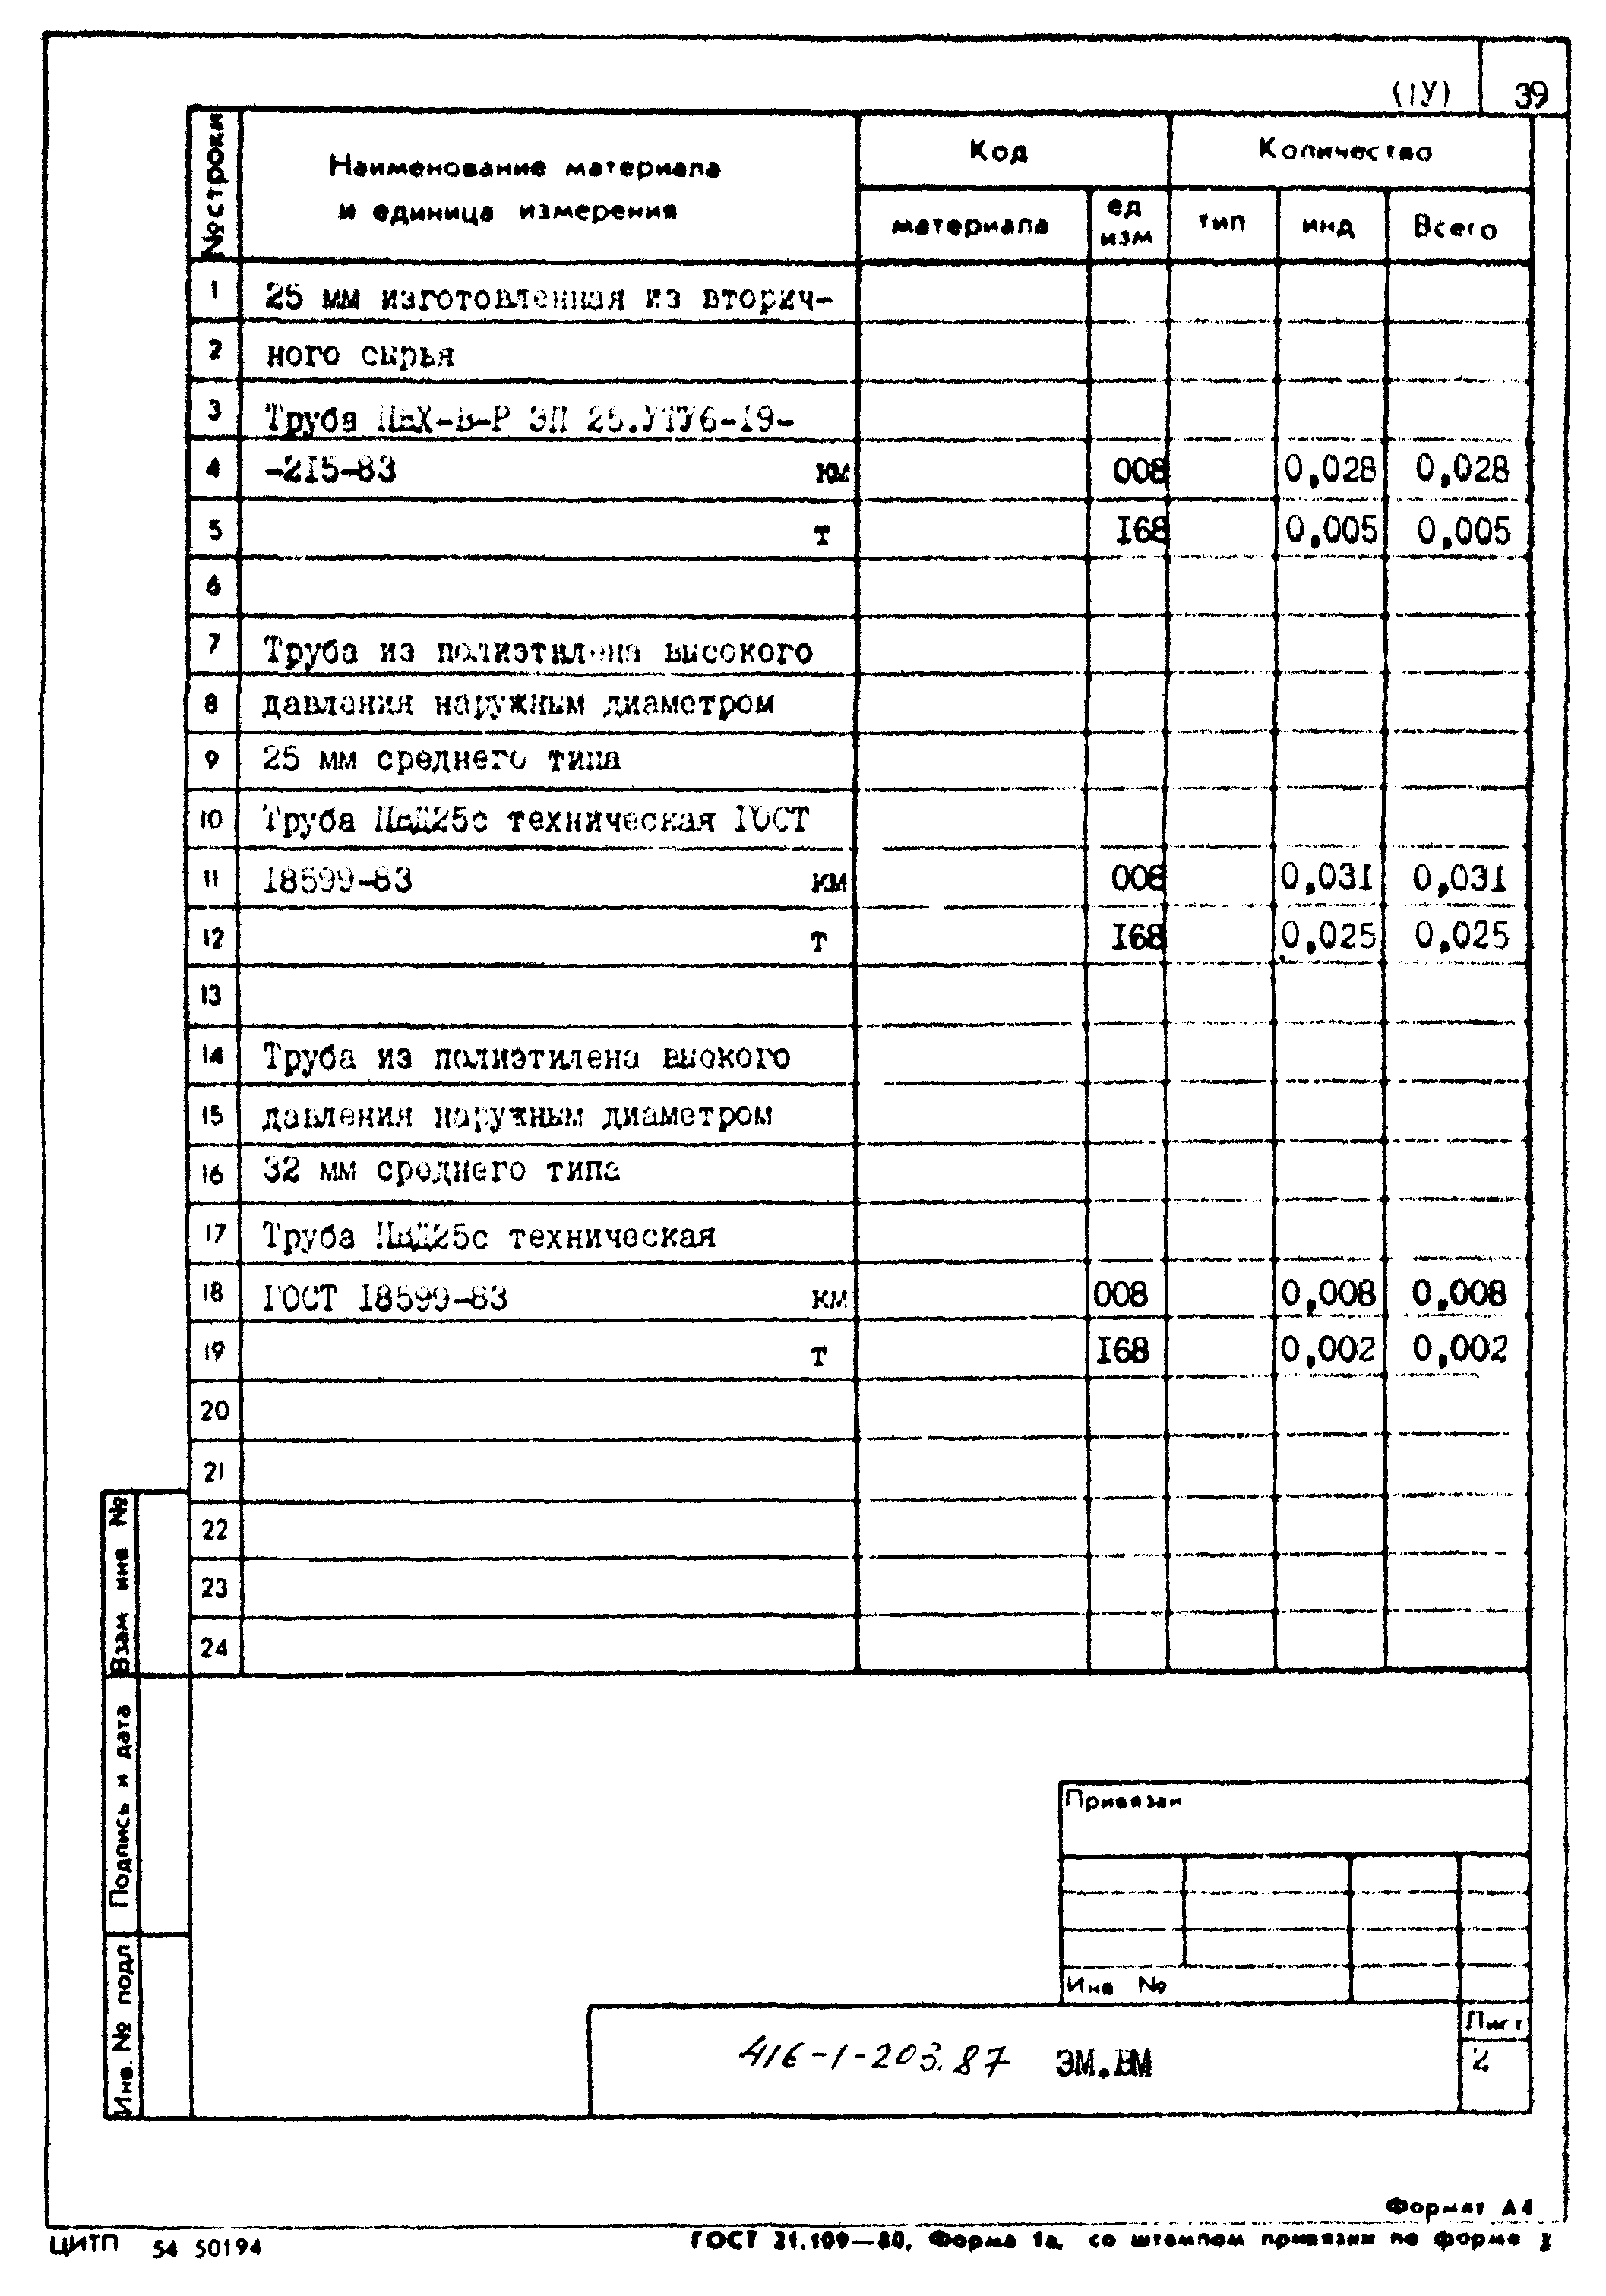 Типовой проект 416-1-203.87